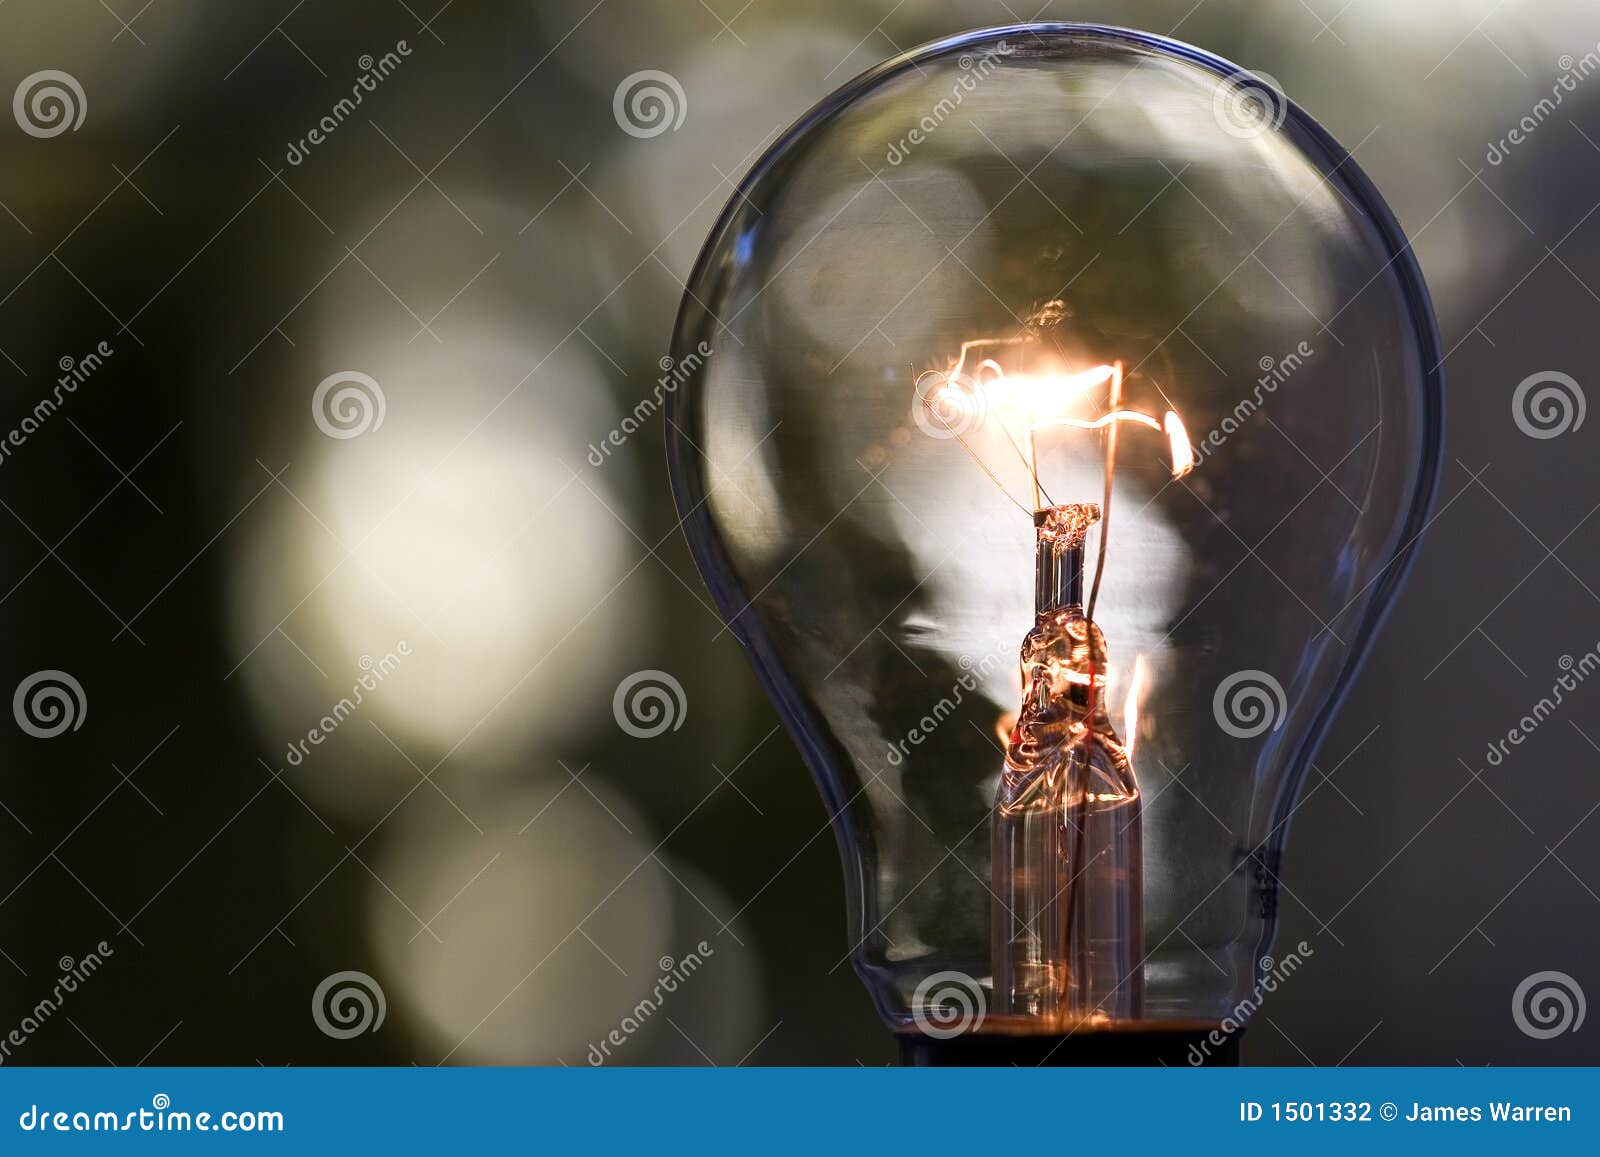 light bulb 1